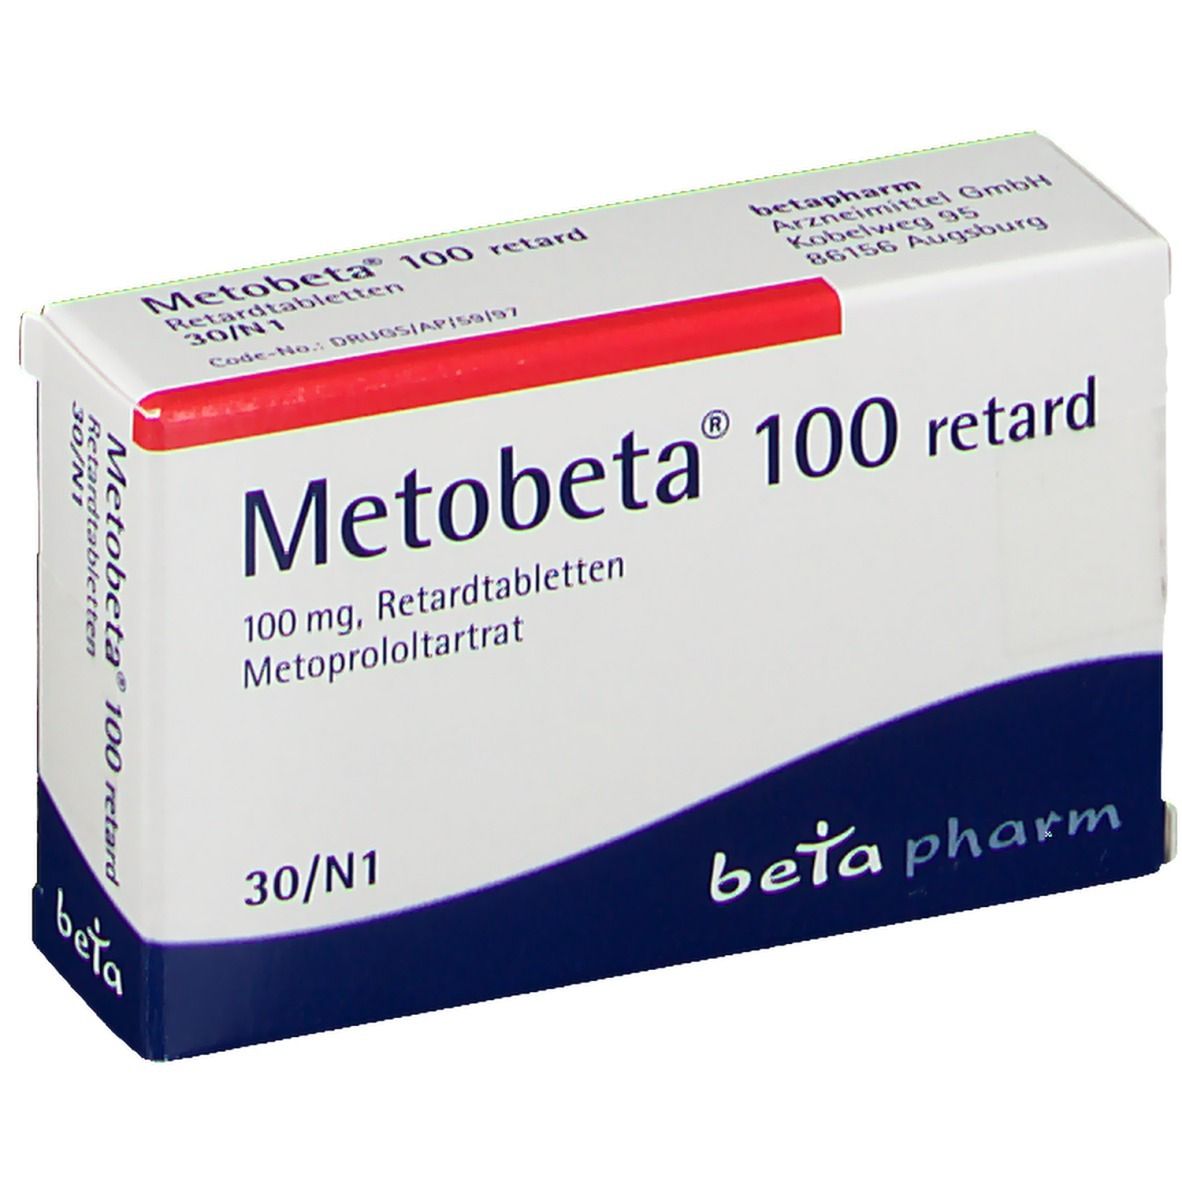 Metobeta® 100 retard